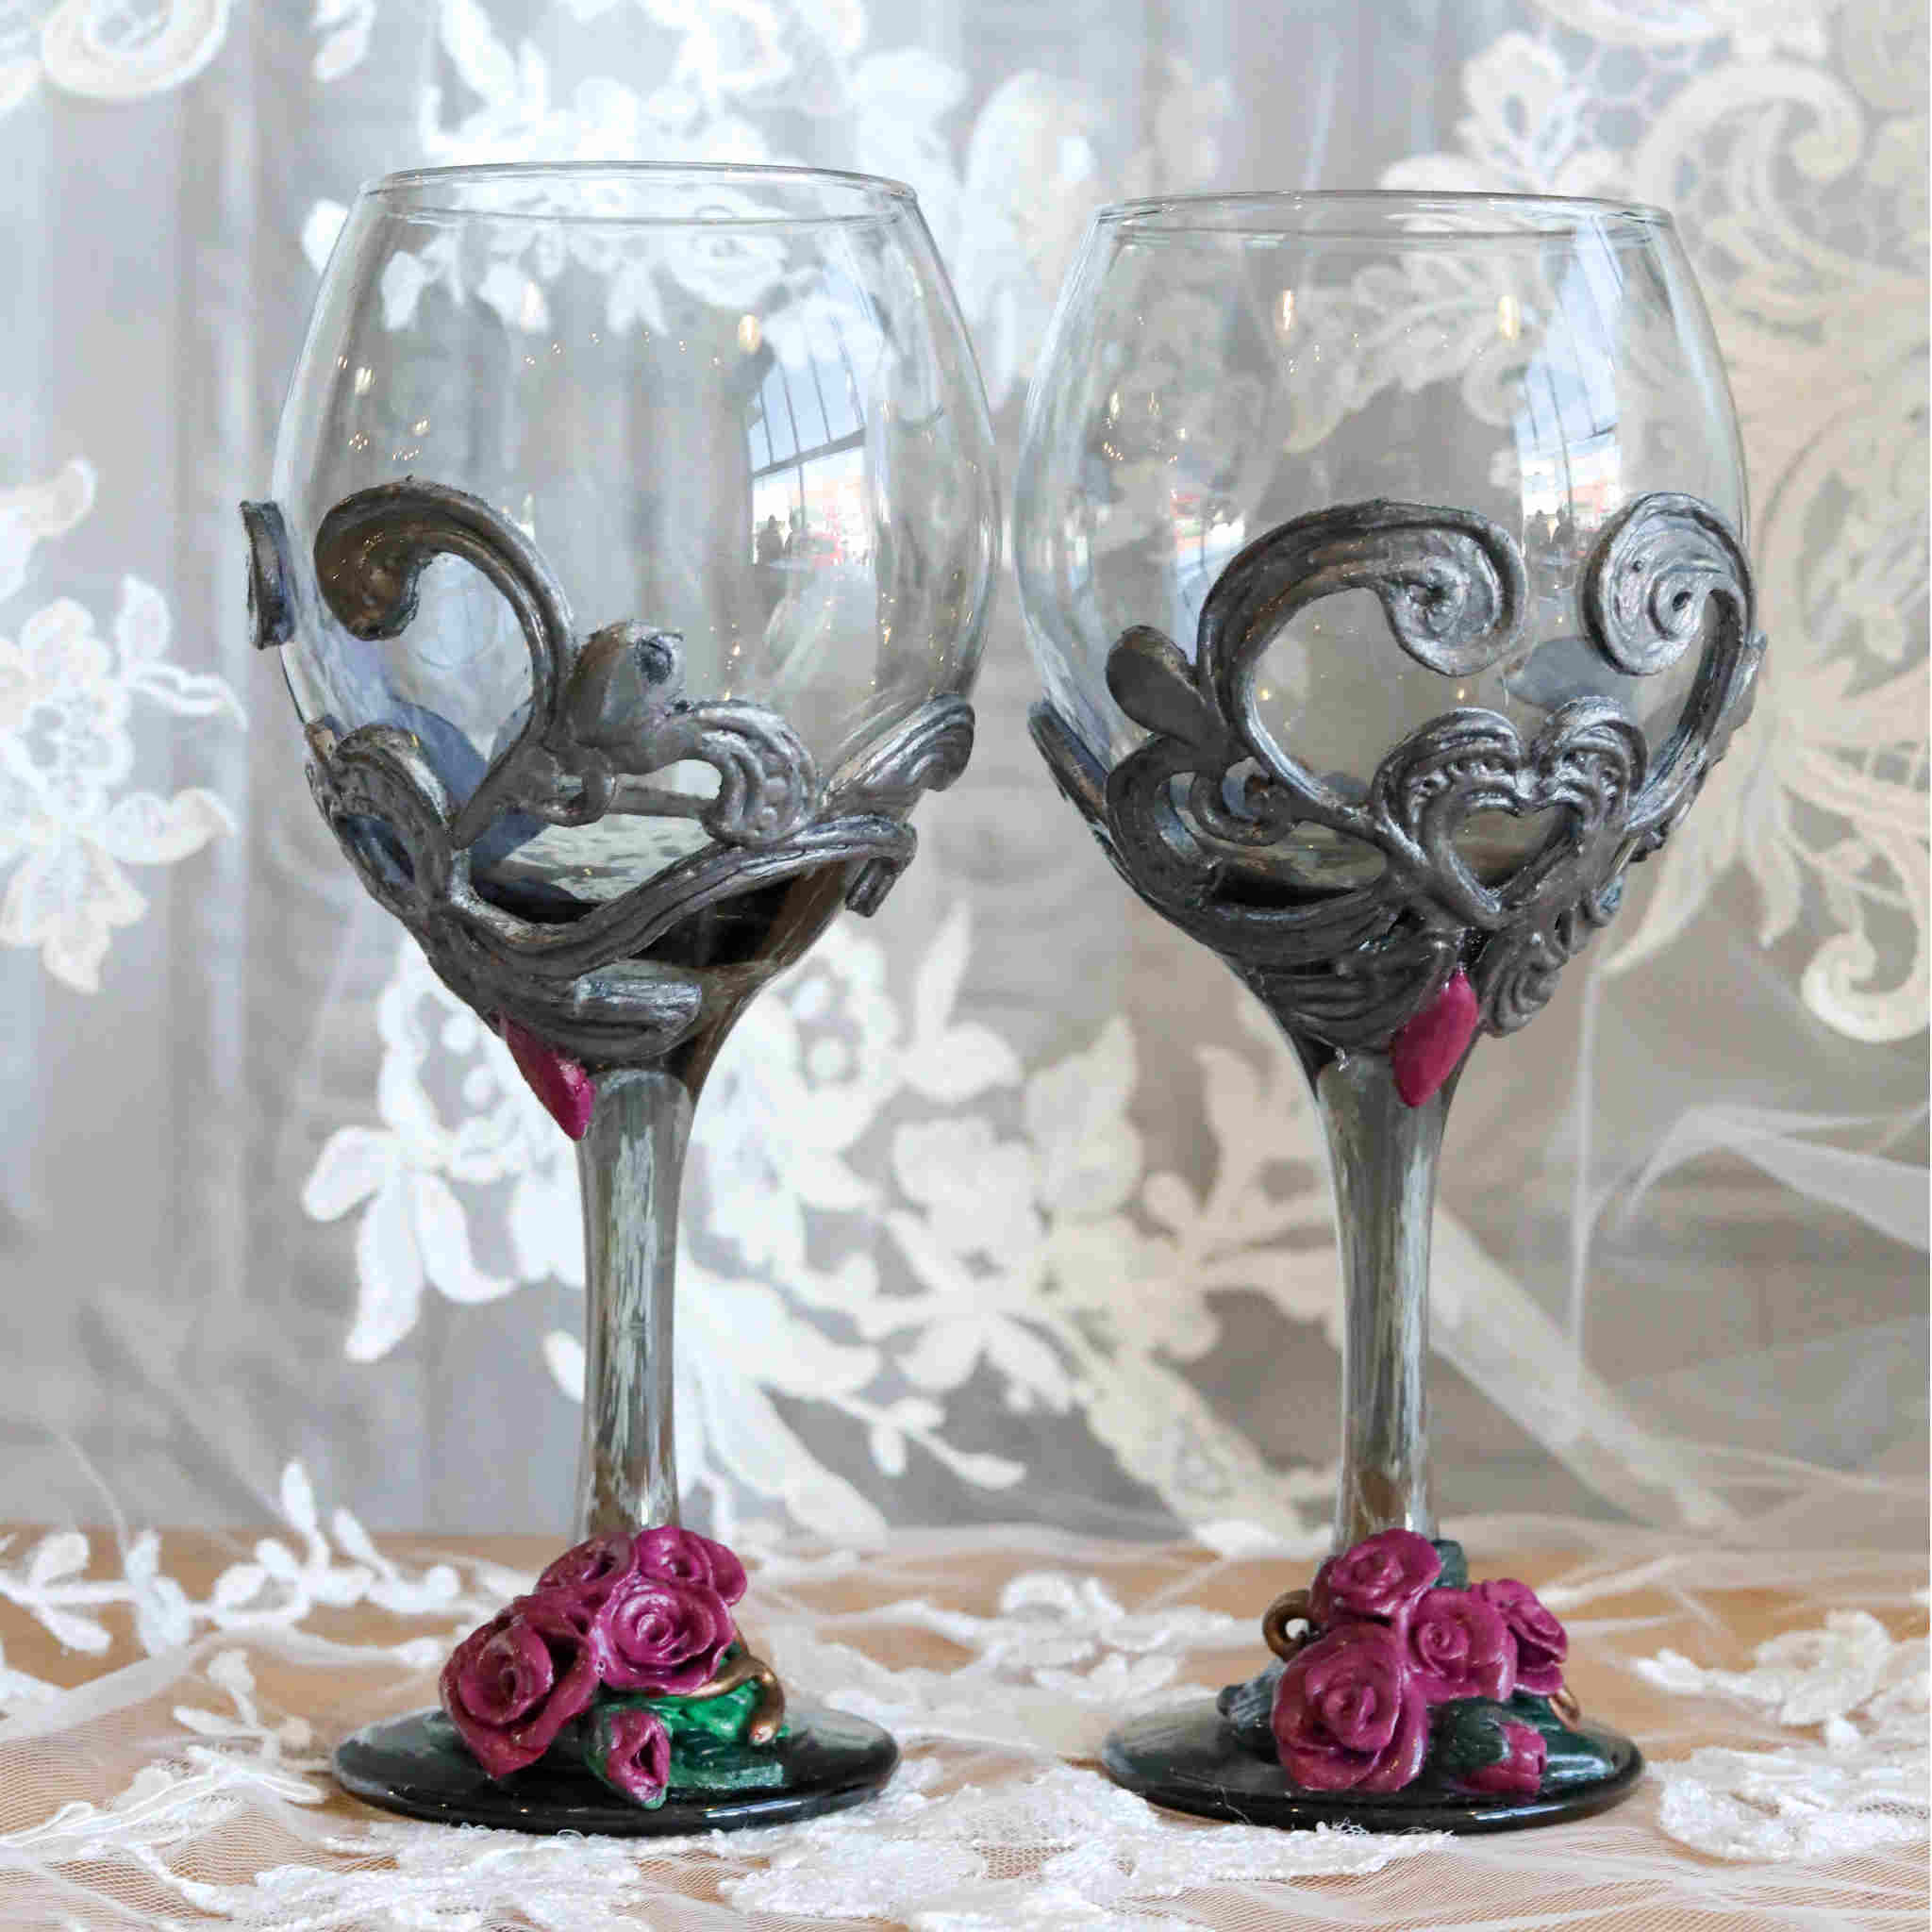 Rose Wine Glass Set